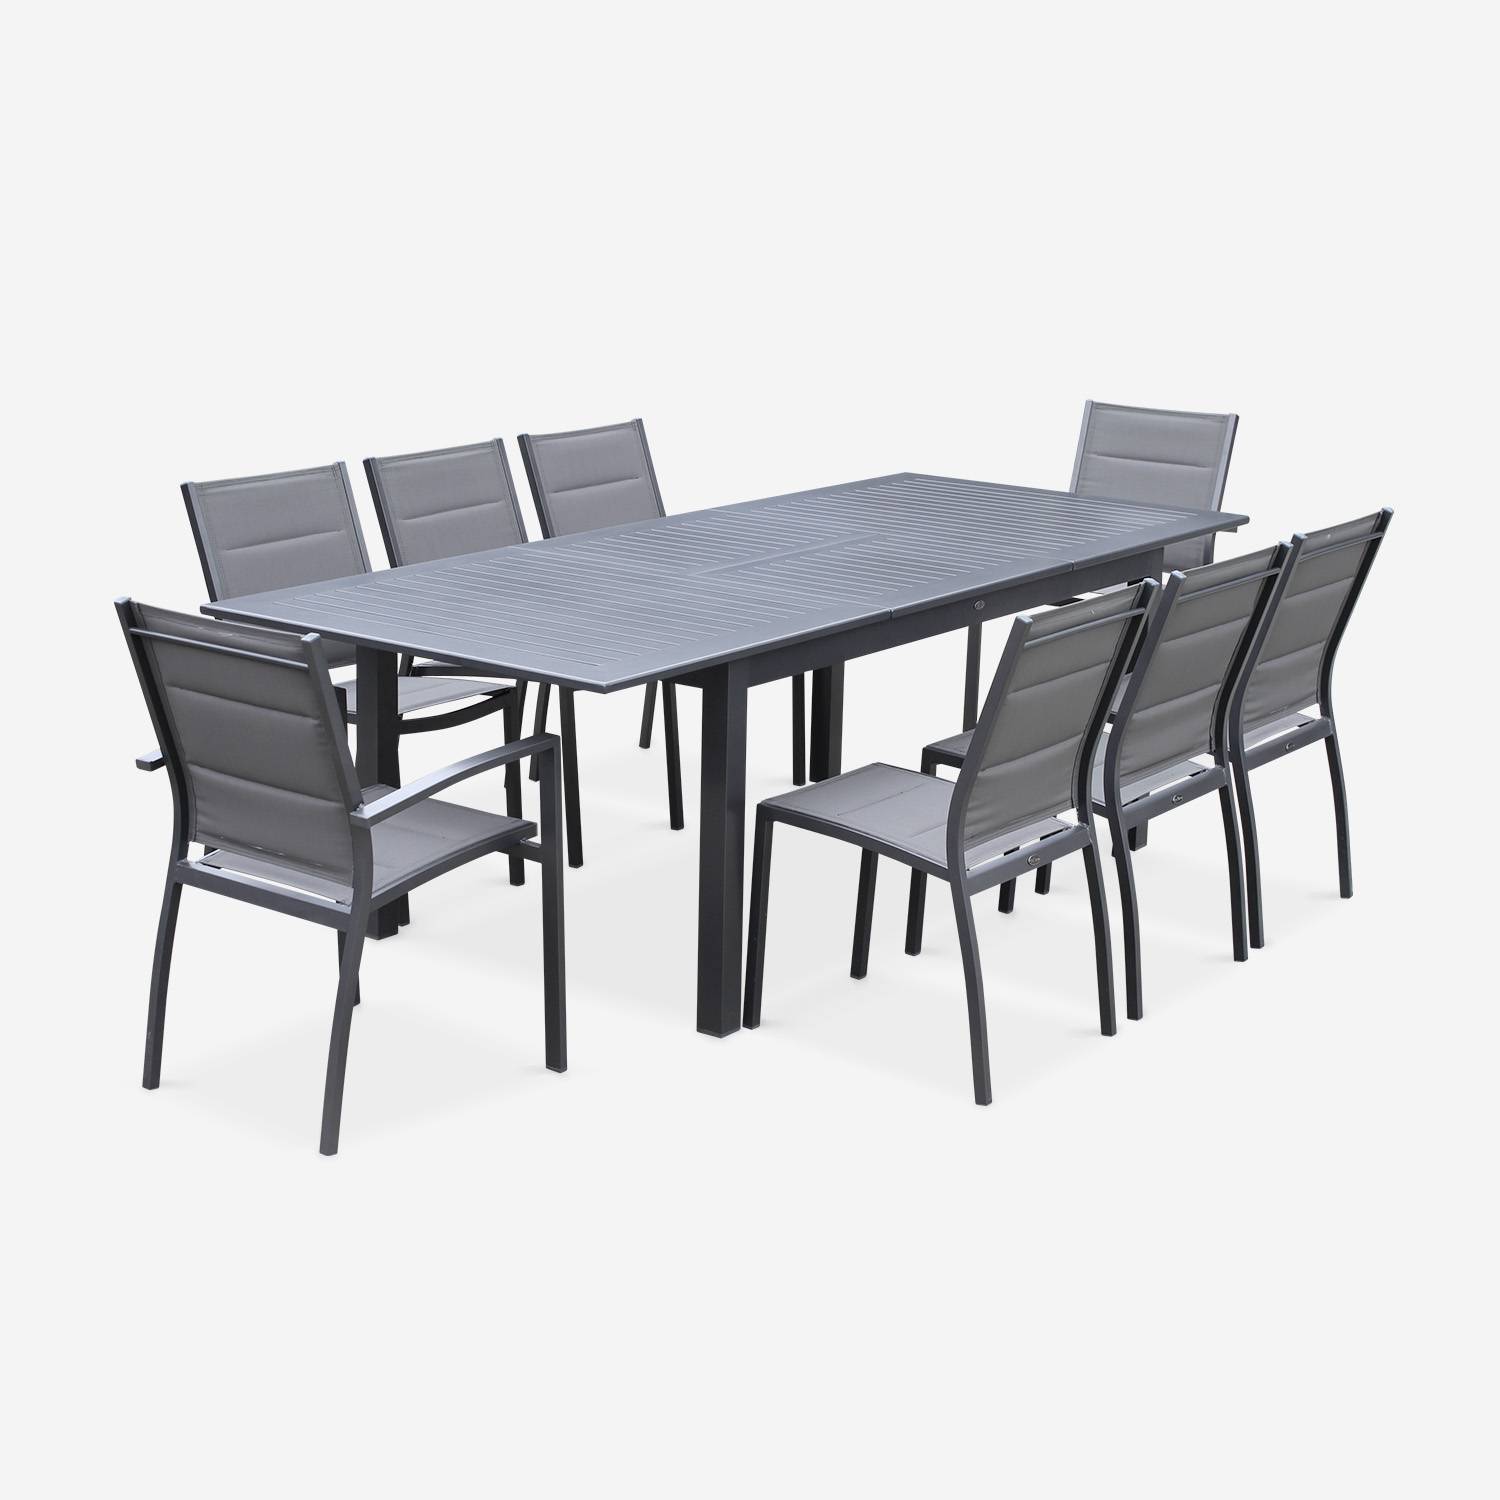 Set da giardino con tavolo allungabile - modello: Chicago, colore: Antracite - Tavolo in alluminio, dimensioni: 175/245cm con prolunga e 8 sedute in textilene,sweeek,Photo2